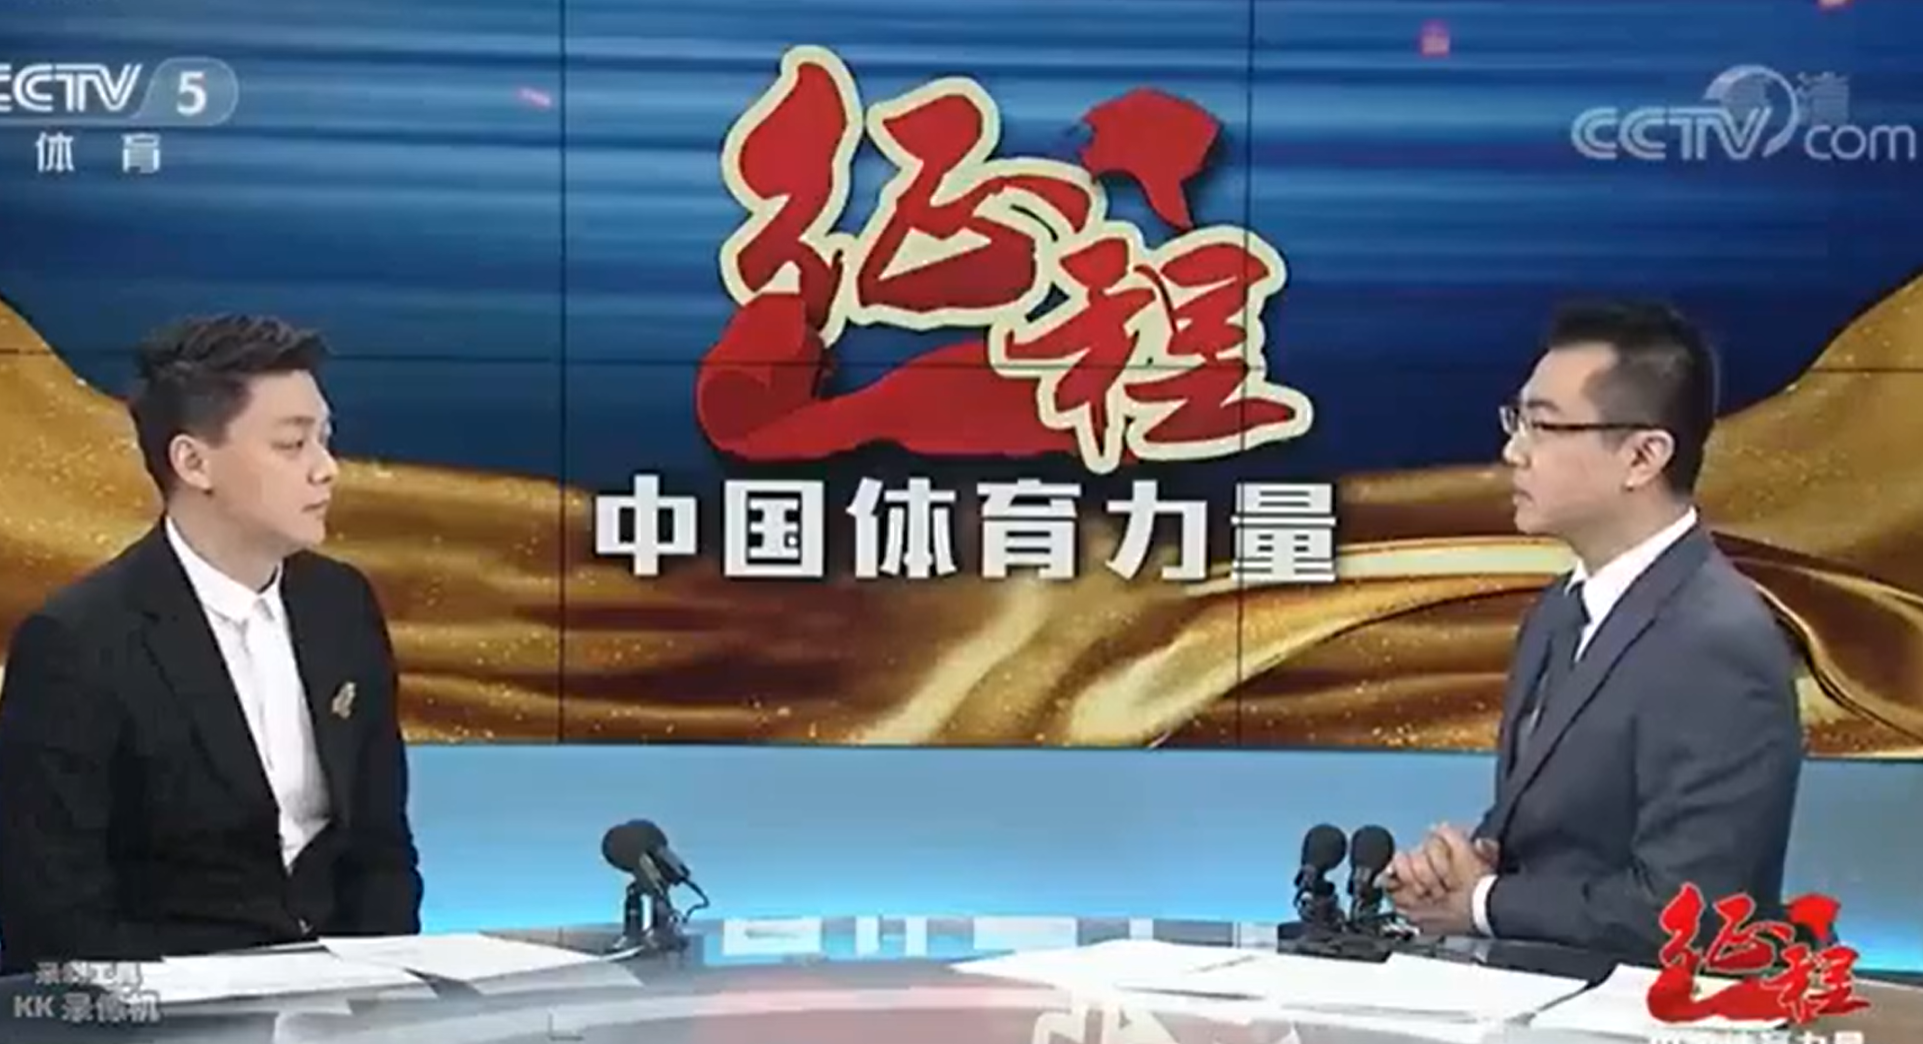 央视披露孙杨近况:上诉被推迟 不在奥运备战名单(图)